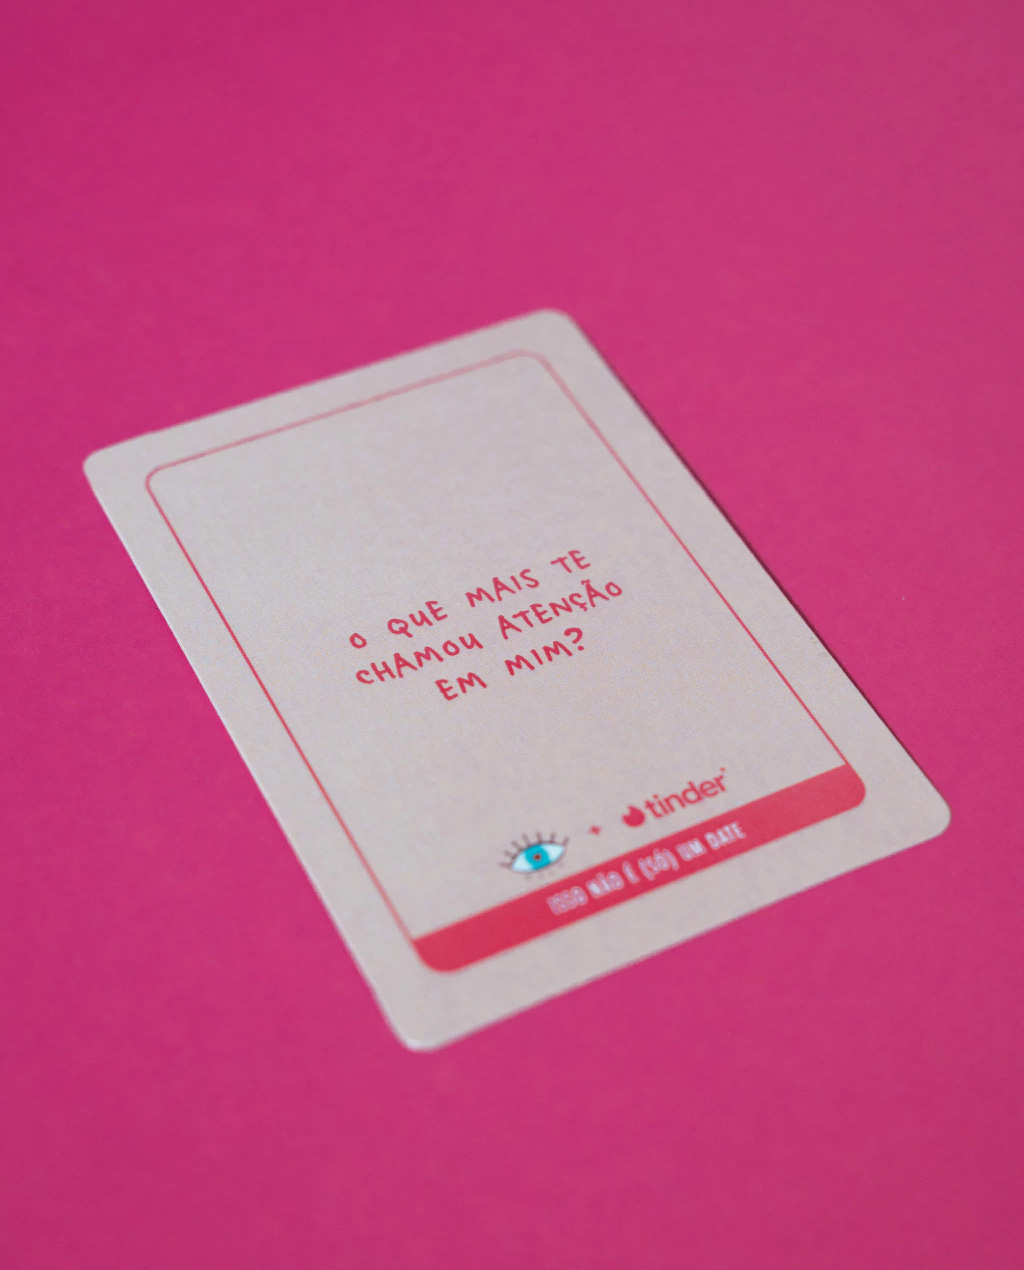 tinder-isso-nao-e-so-um-date-isso-nao-e-um-jogo-design-card-game-relacionamentos-com-limao-03